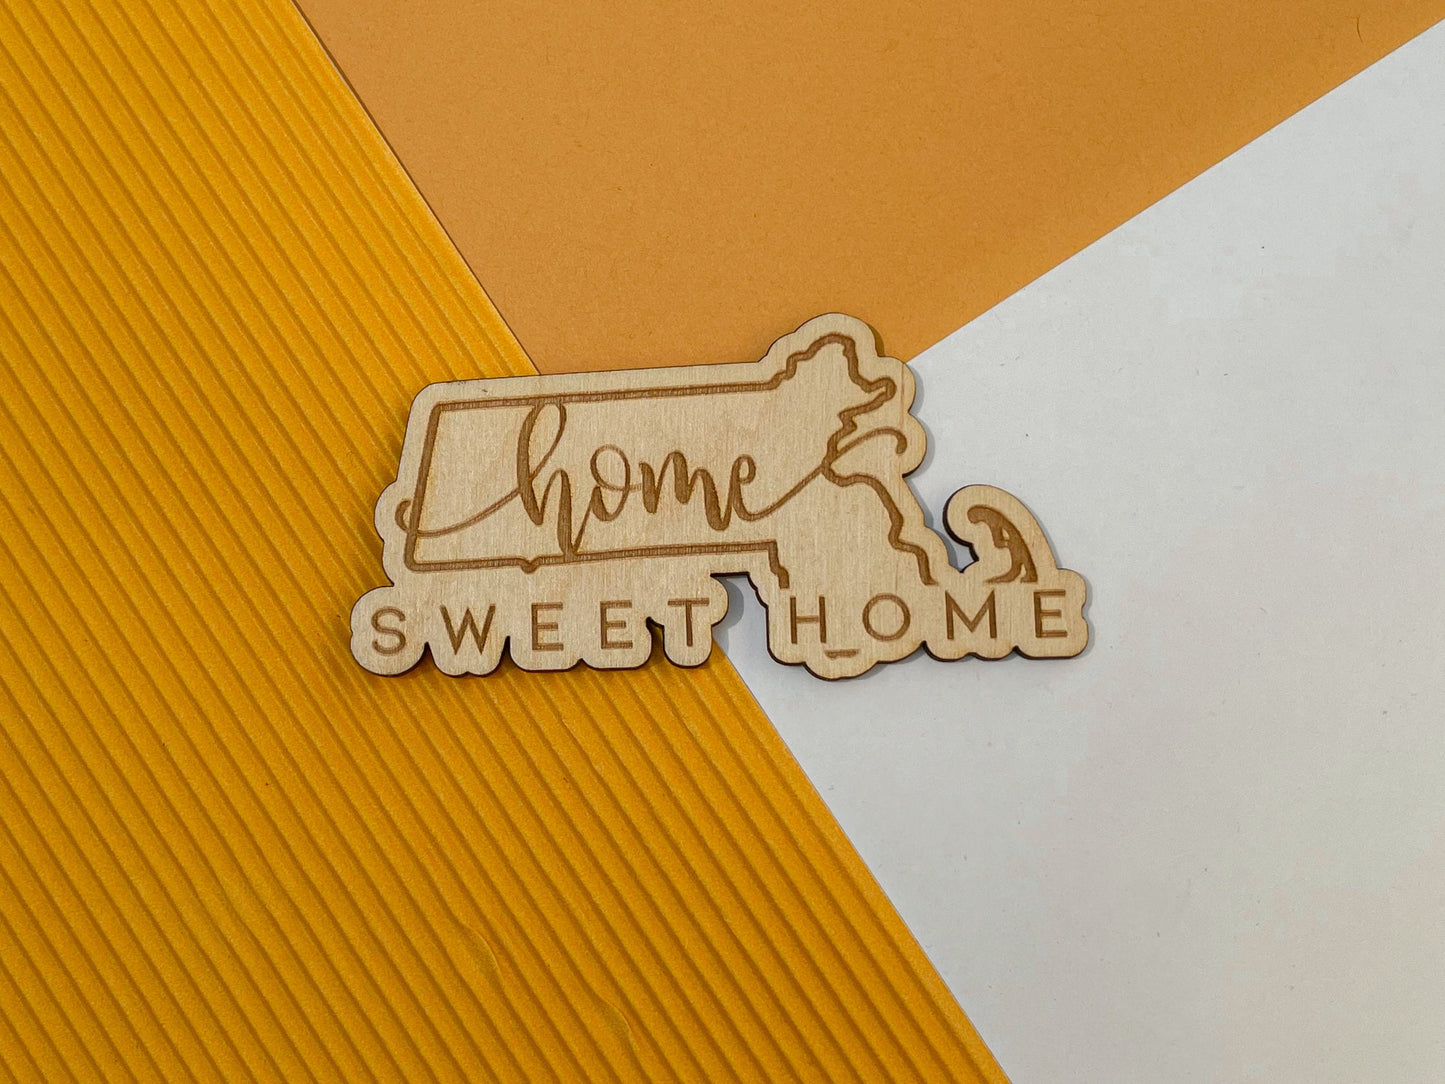 Massachusetts Home Sweet Home Magnet